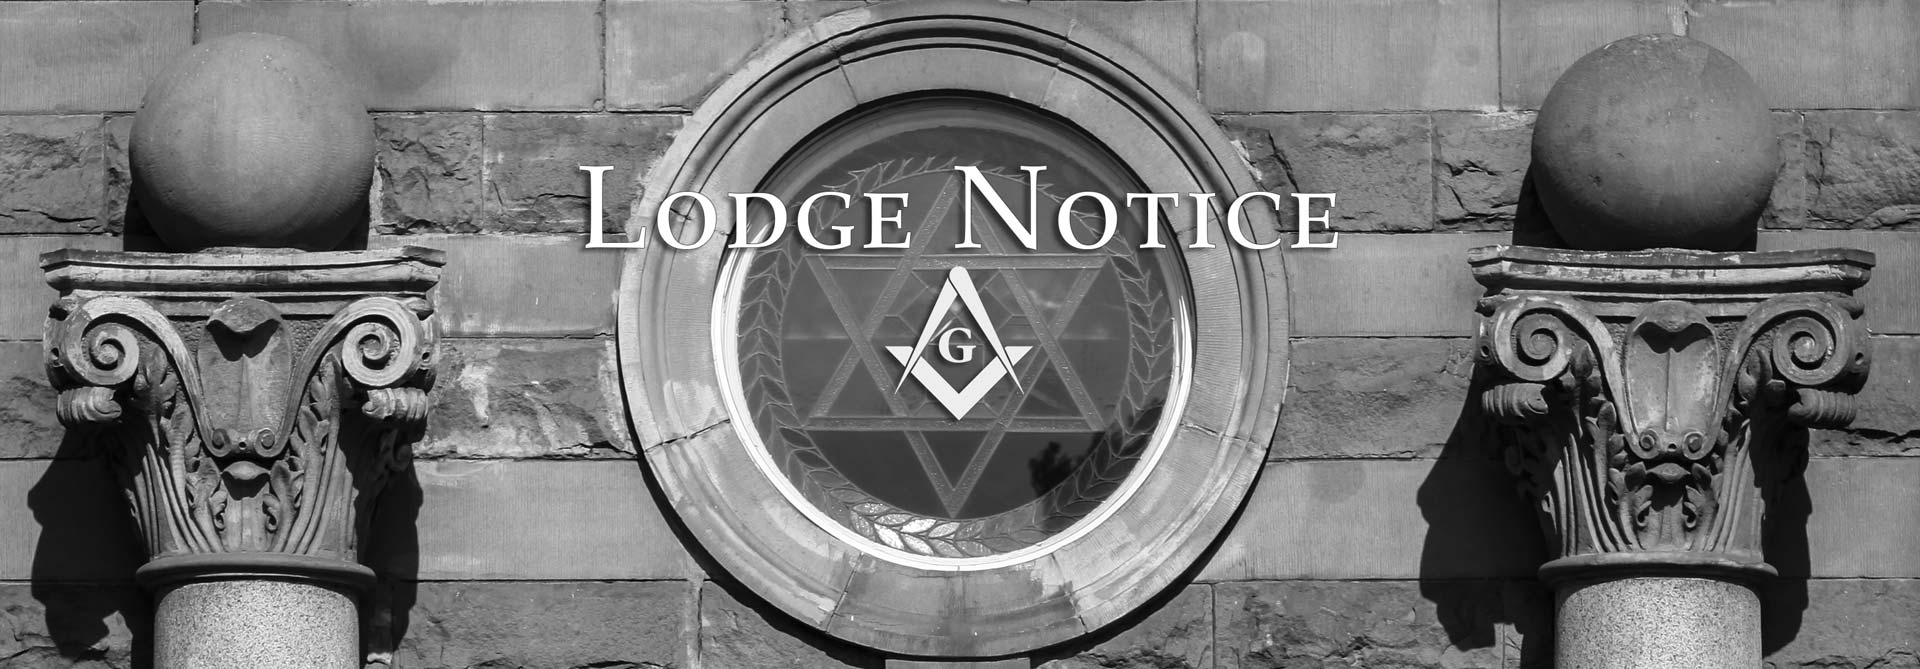 Lodge-Notice-Nov 2019